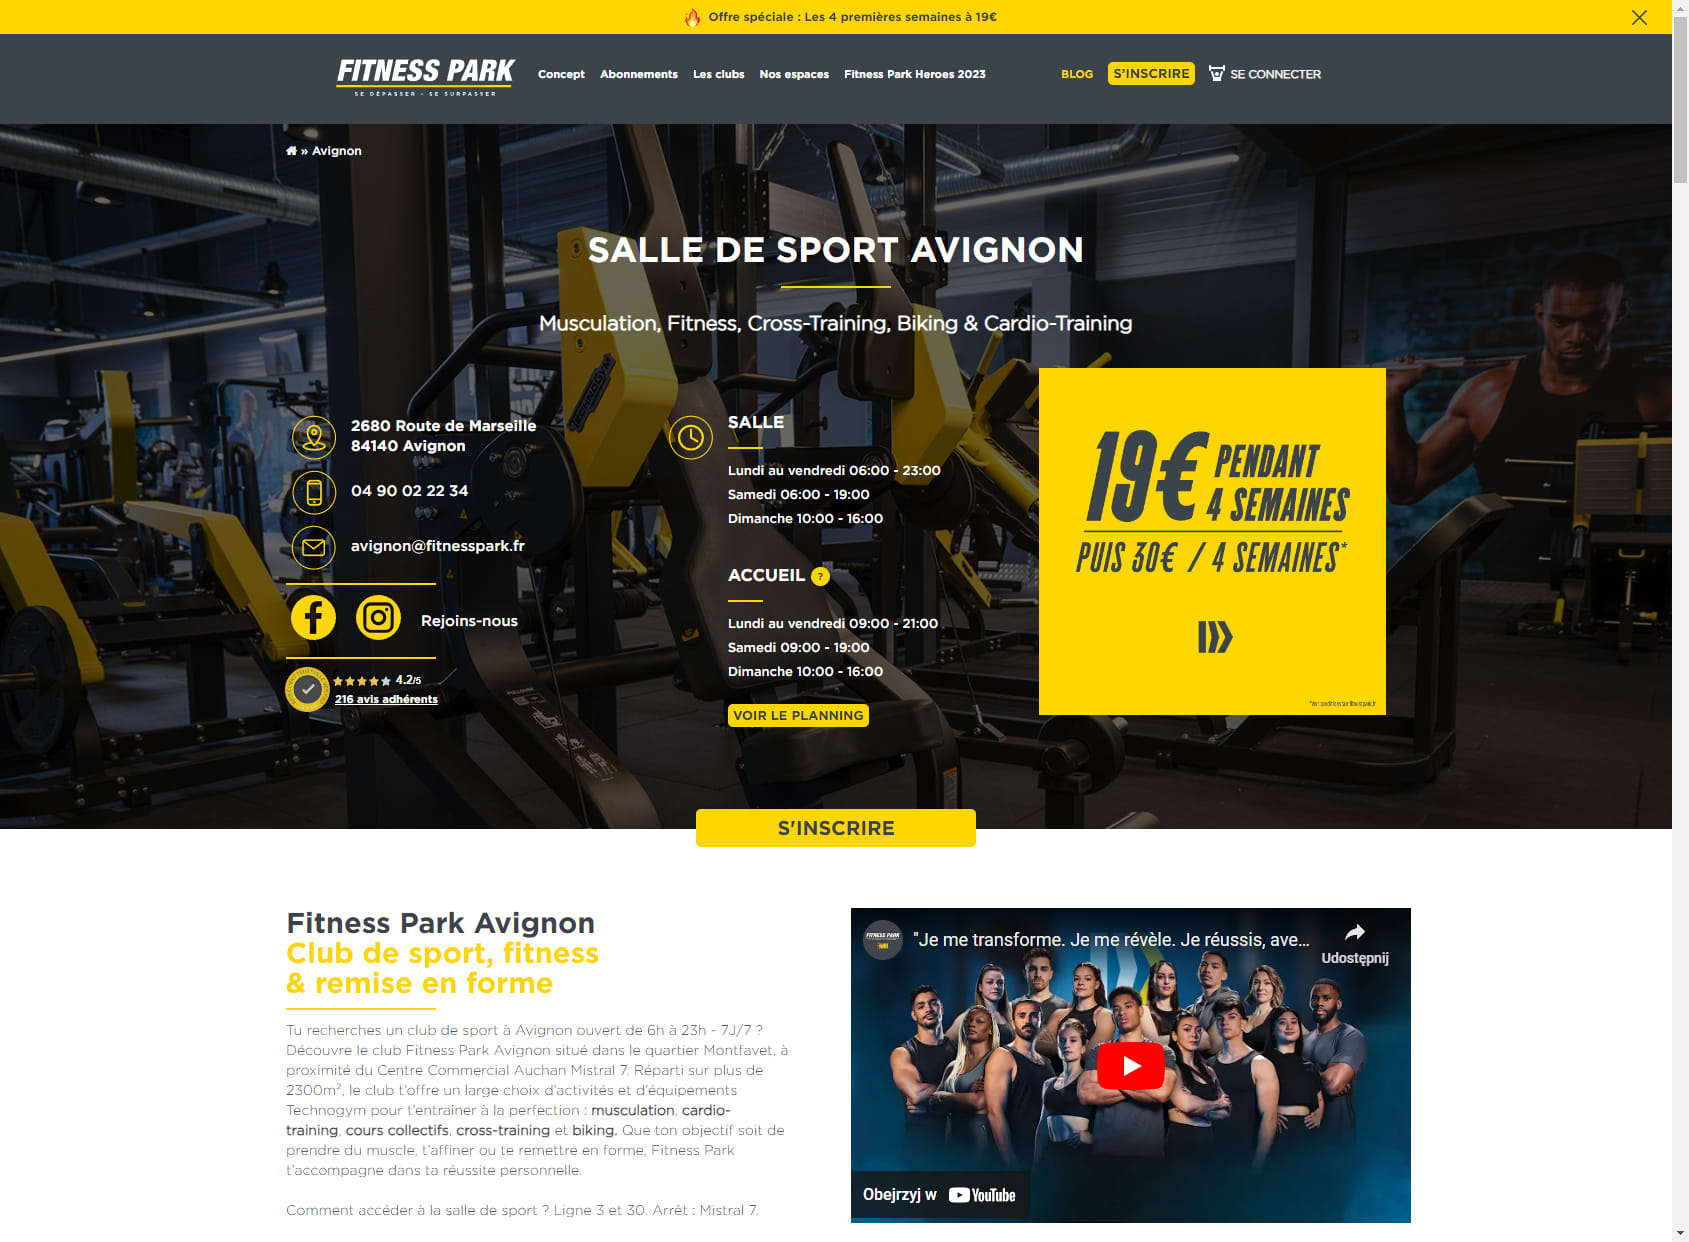 Salle de sport Avignon - Fitness Park